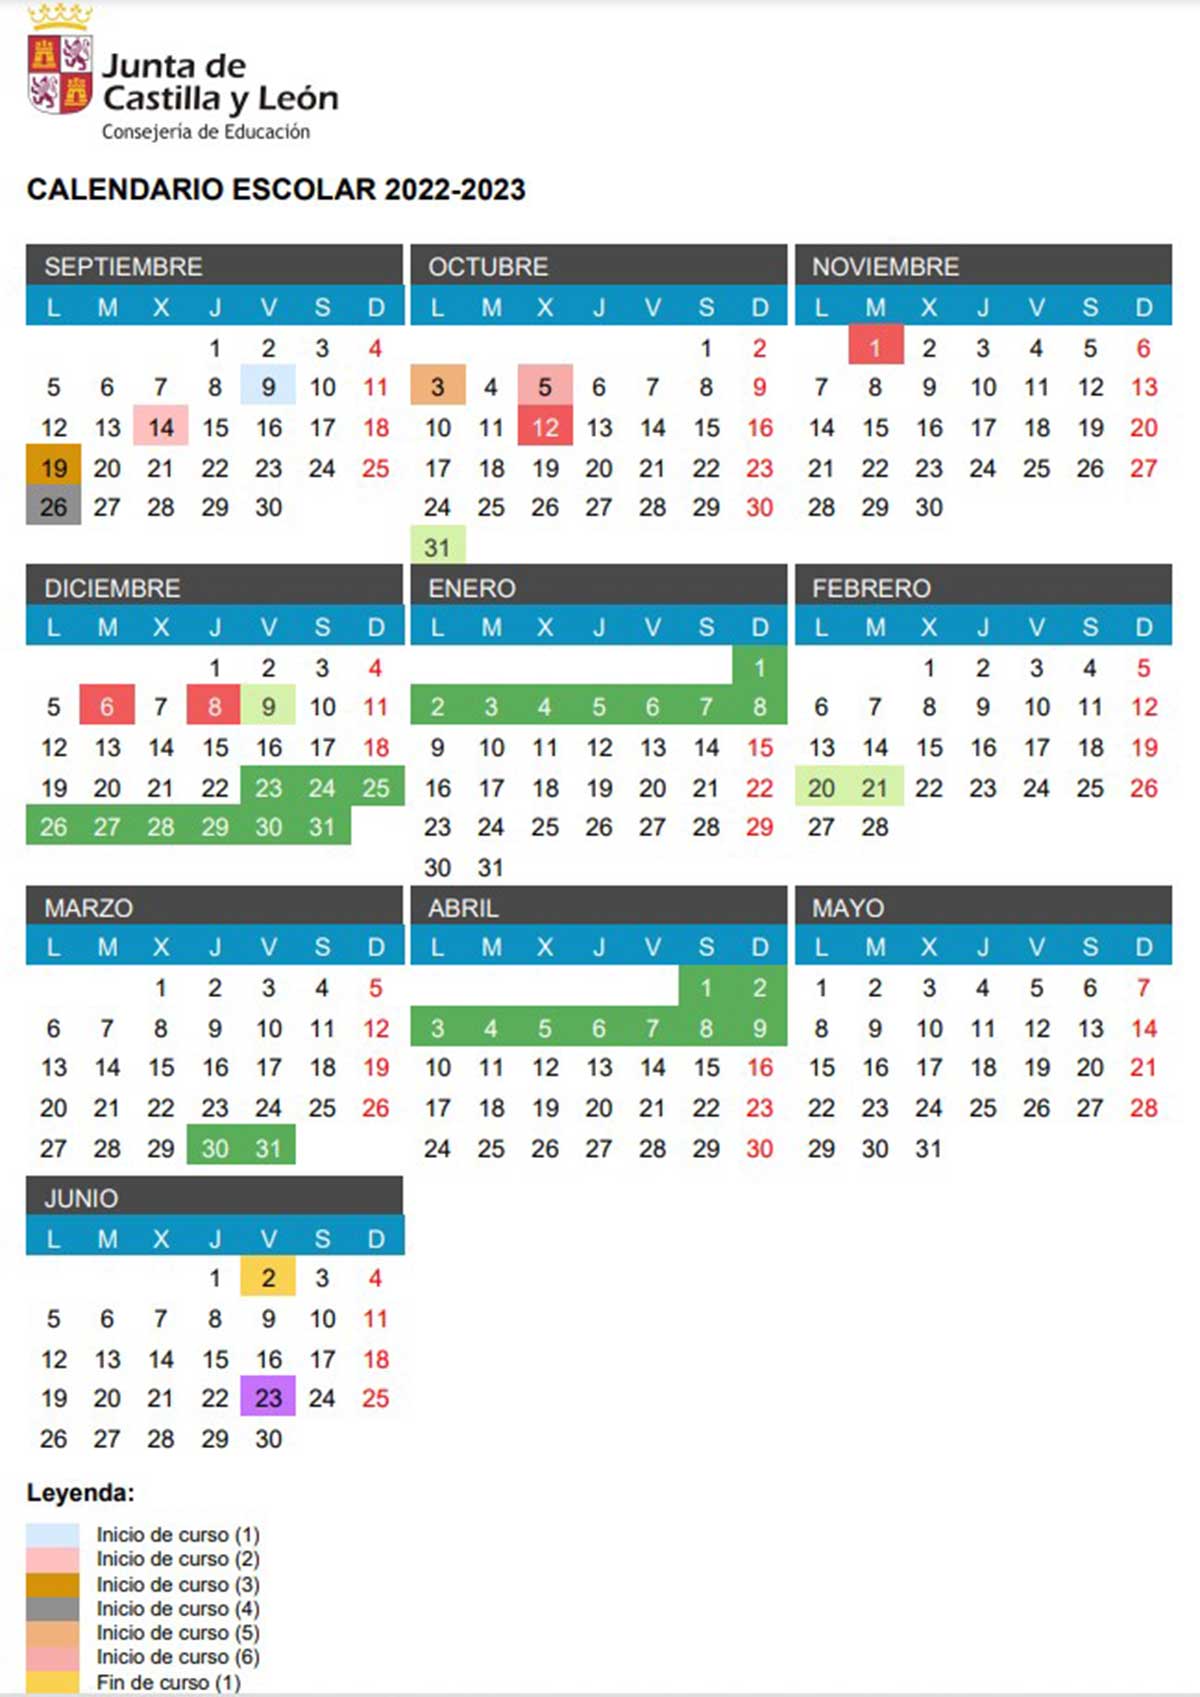 Calendario escolar de Castilla y León para el curso 2022 / 2023.